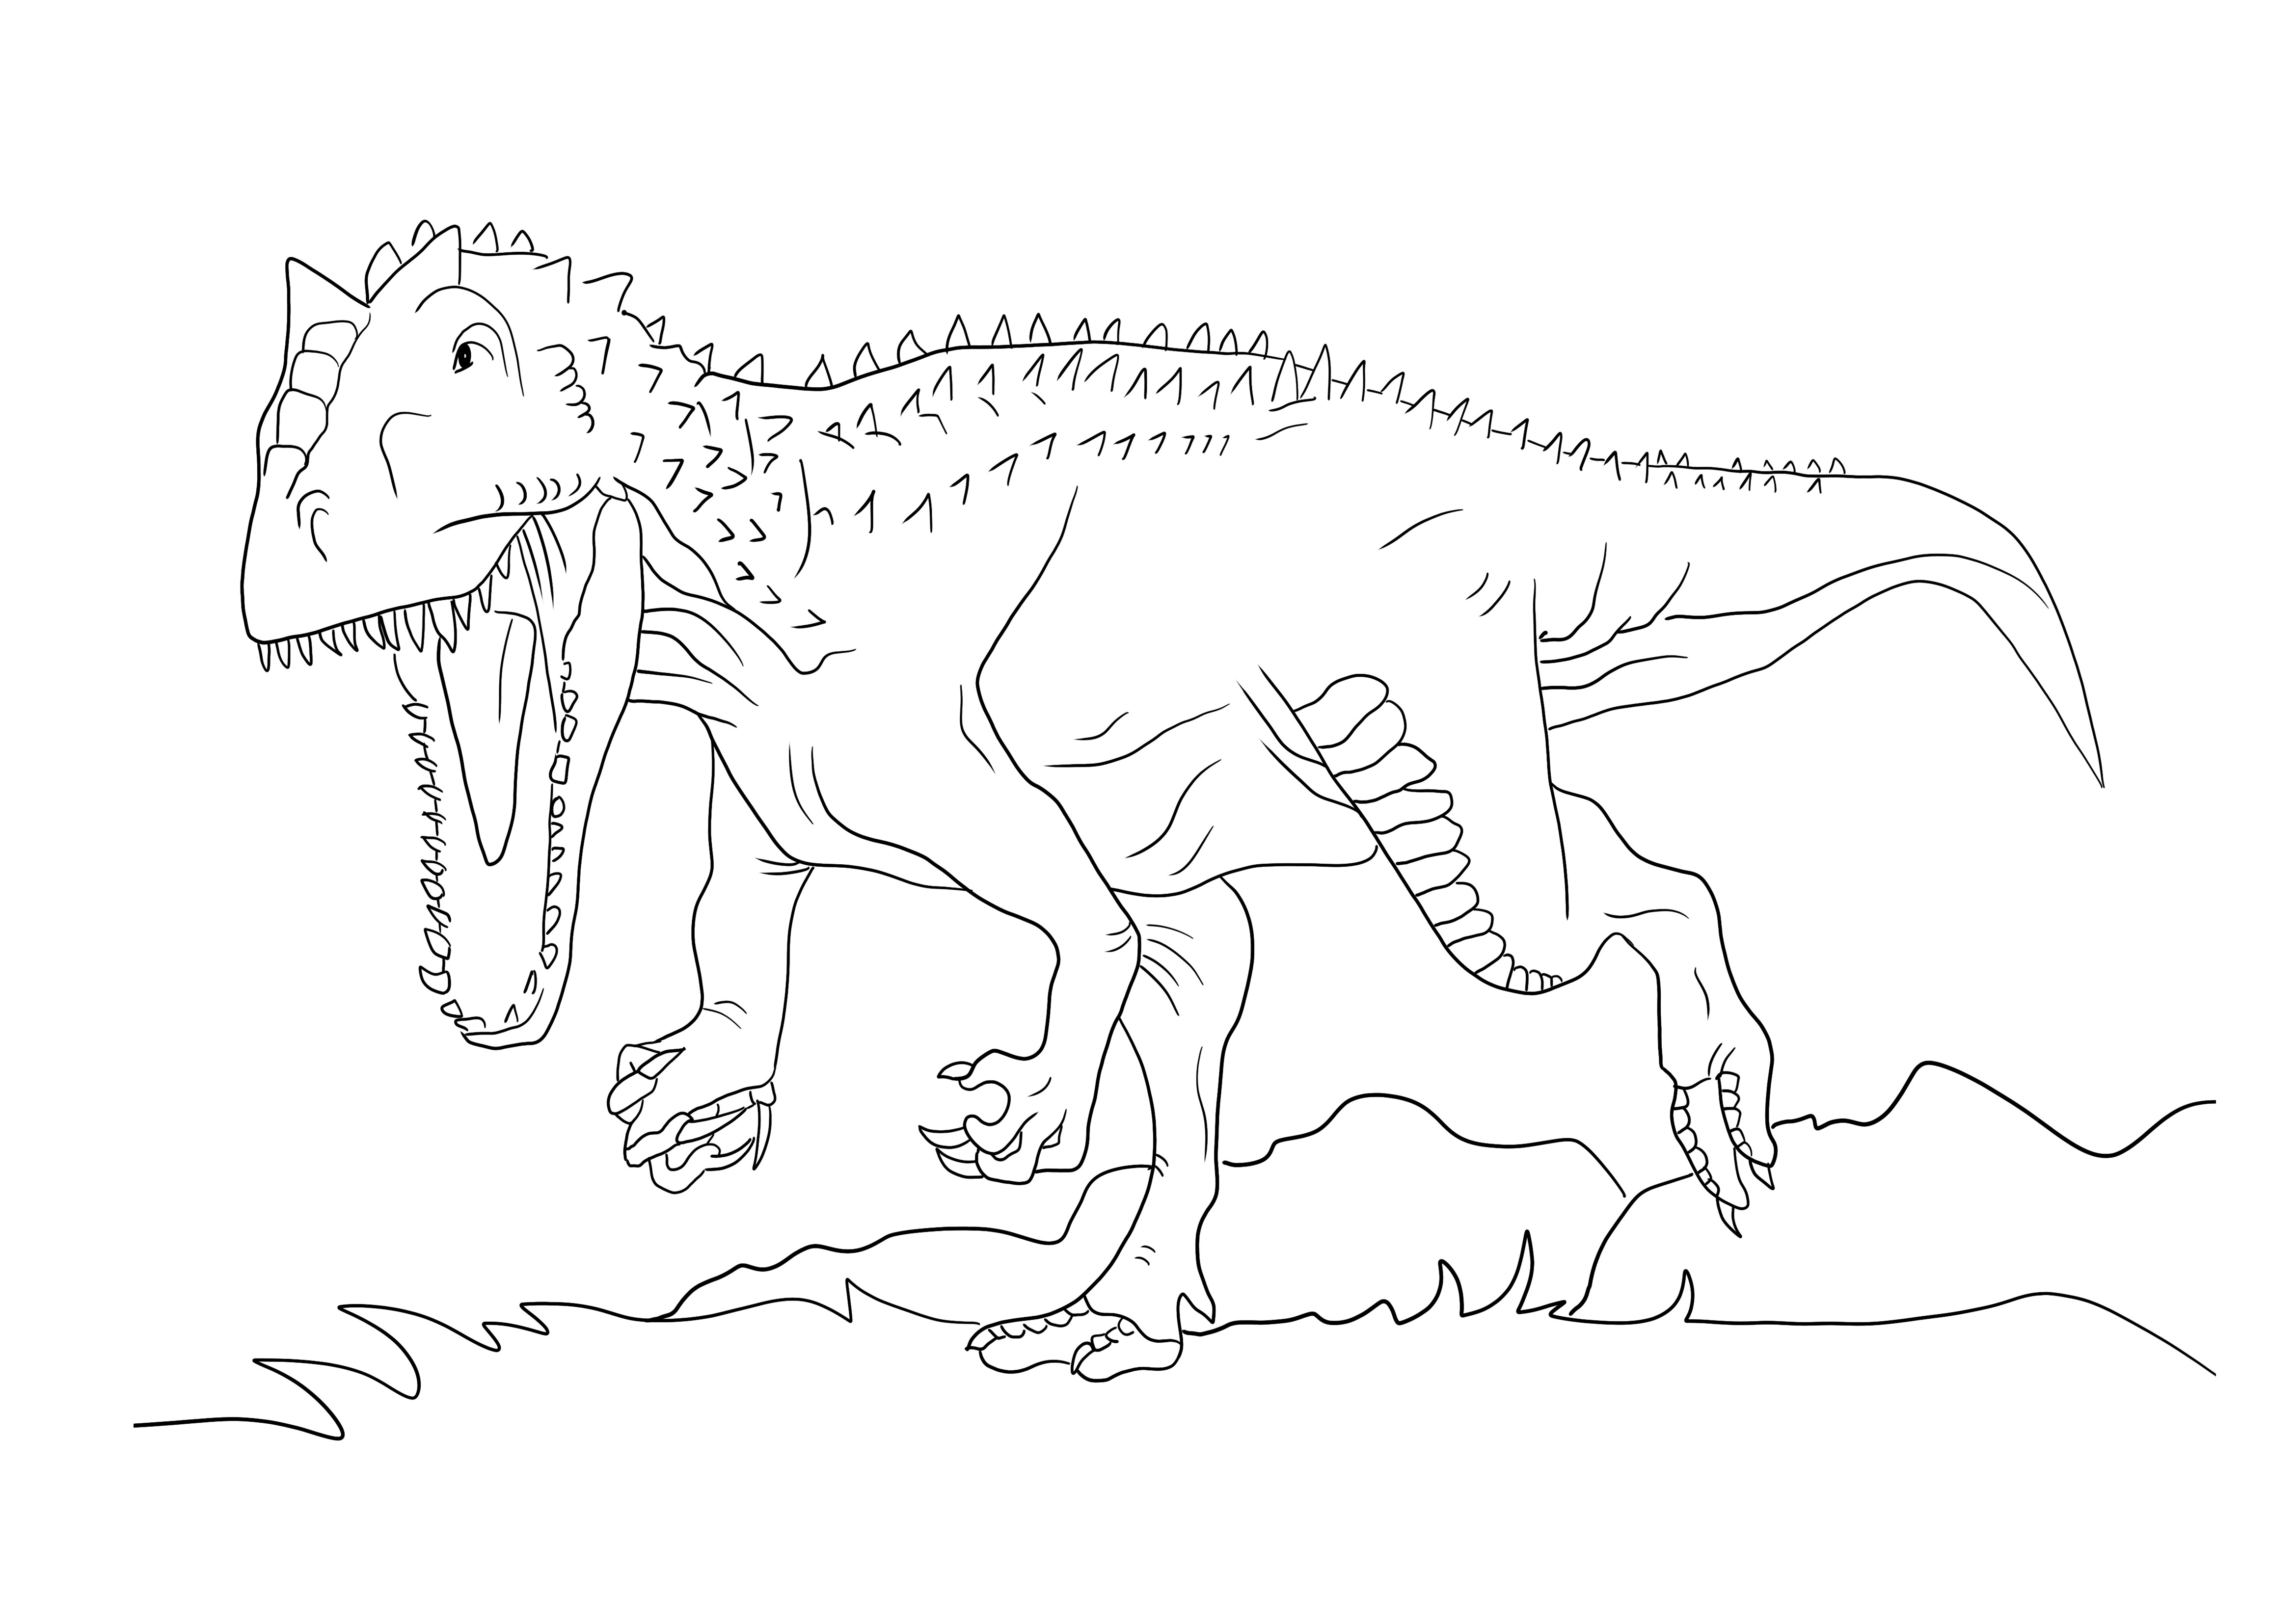 Jurassic park indominus rex halaman mewarnai gratis untuk dicetak dan diunduh